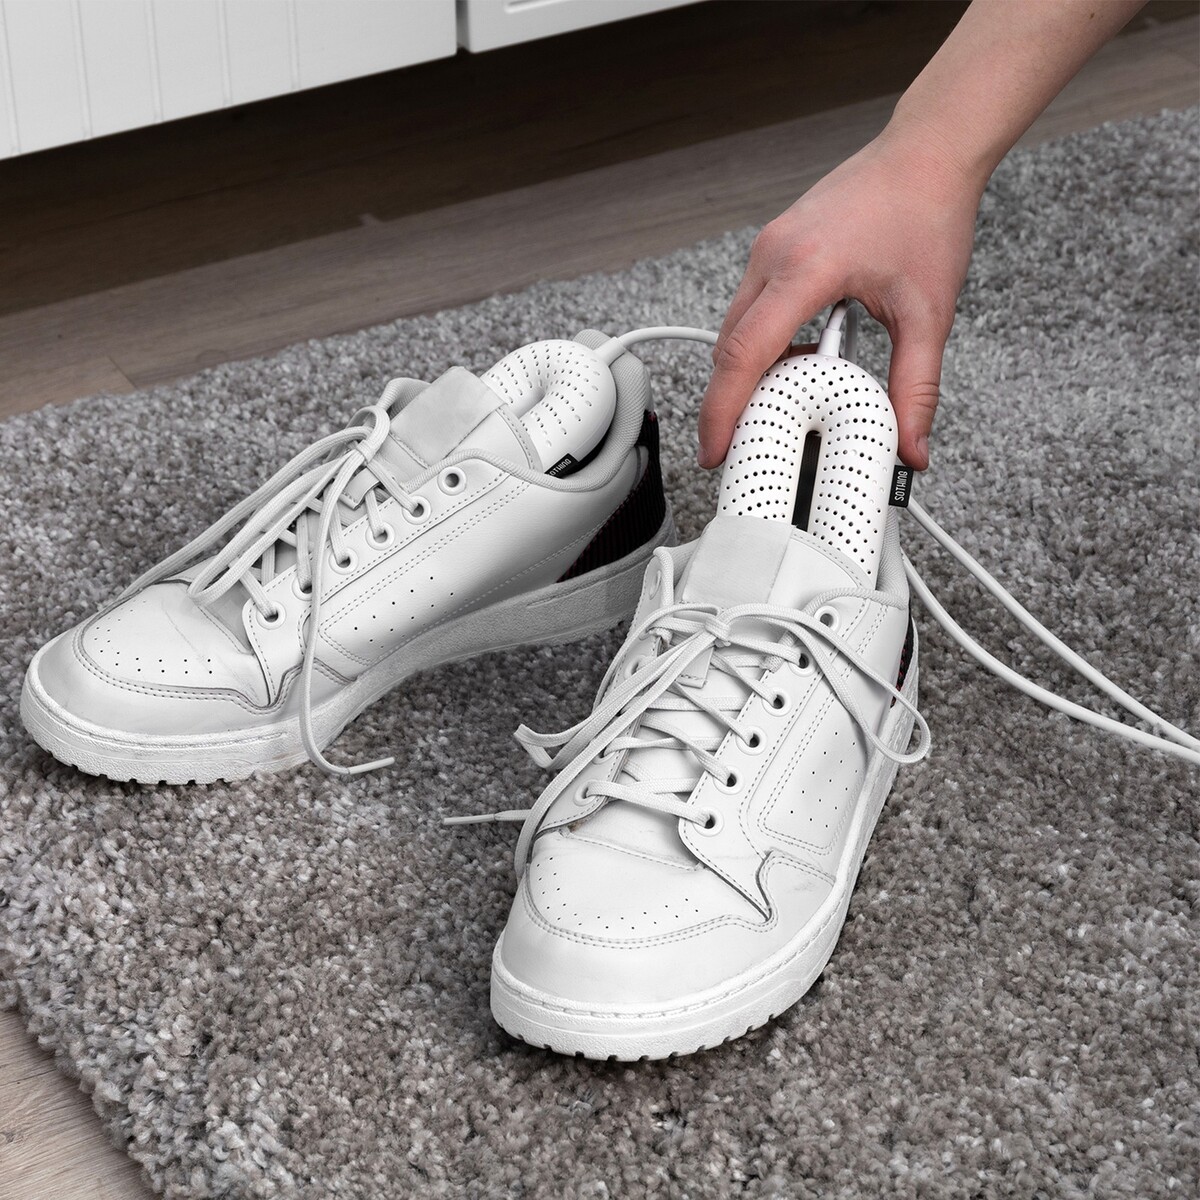 фото Сушилка для обуви windigo lso-07, 17 см, 20 вт, индикатор, таймер 3/6/9 часов, белая